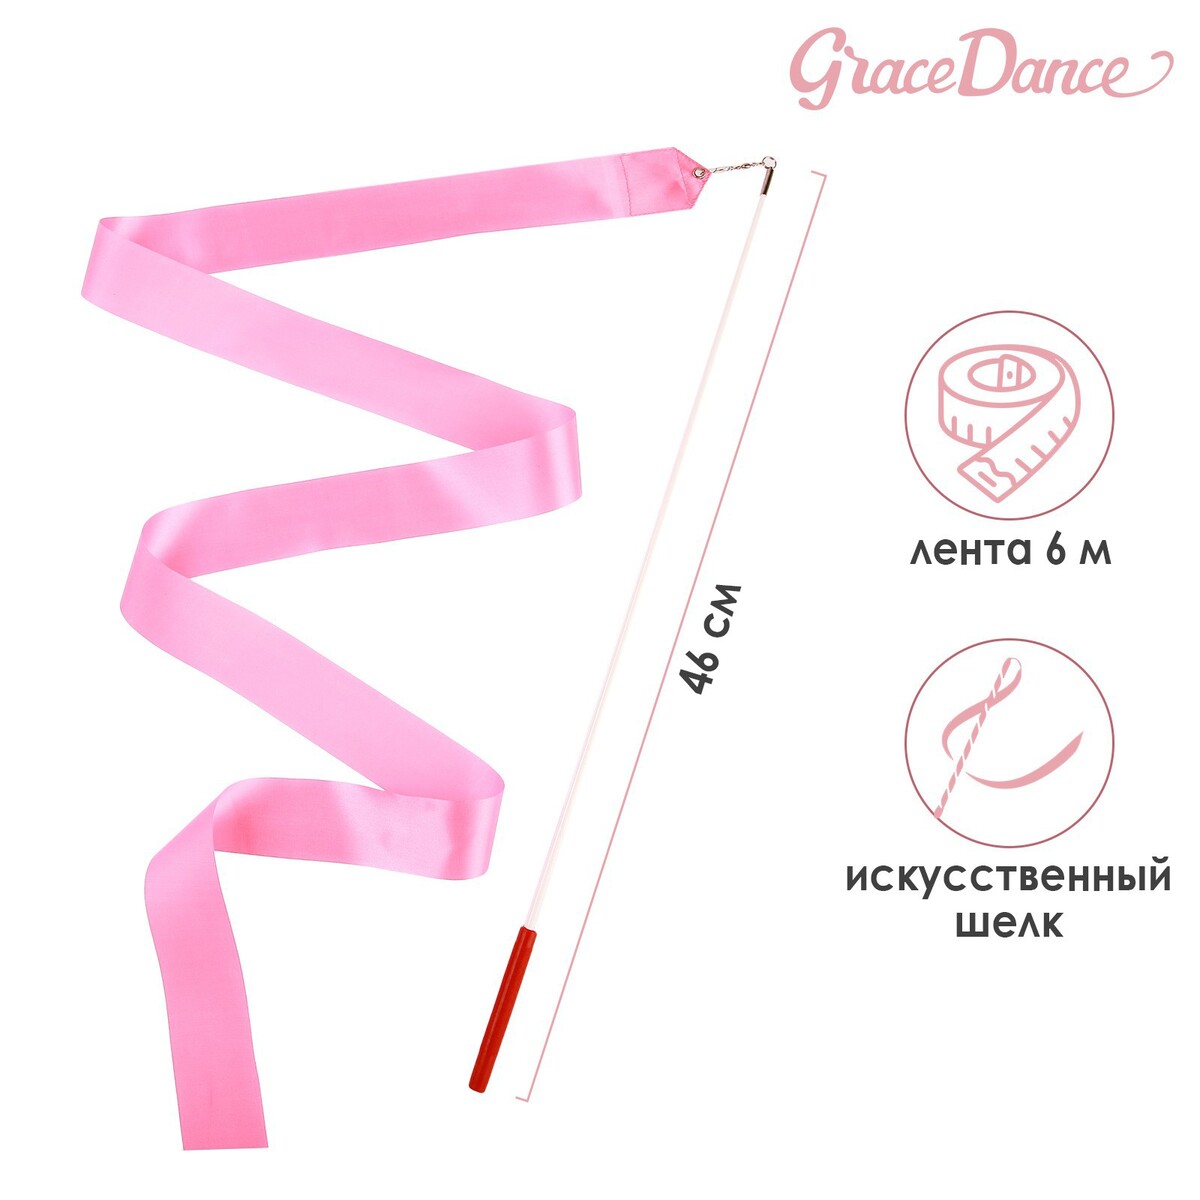 Лента для художественной гимнастики с палочкой grace dance, 6 м, цвет розовый лента гимнастическая с палочкой grace dance 4 м синий